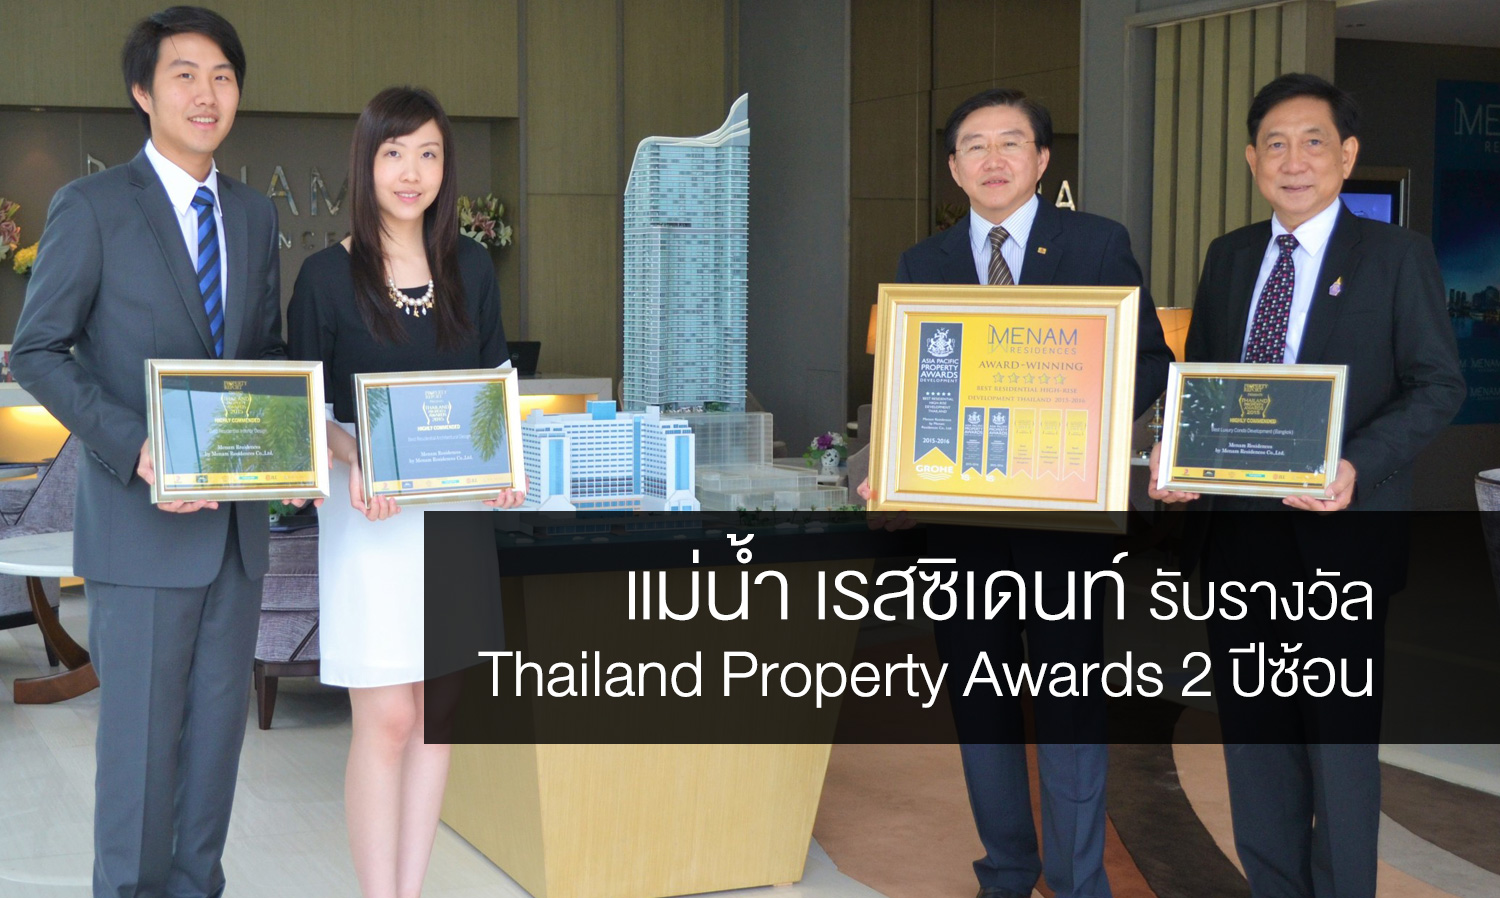 แม่น้ำ เรสซิเดนท์ รับรางวัล Thailand Property Awards 2 ปีซ้อน